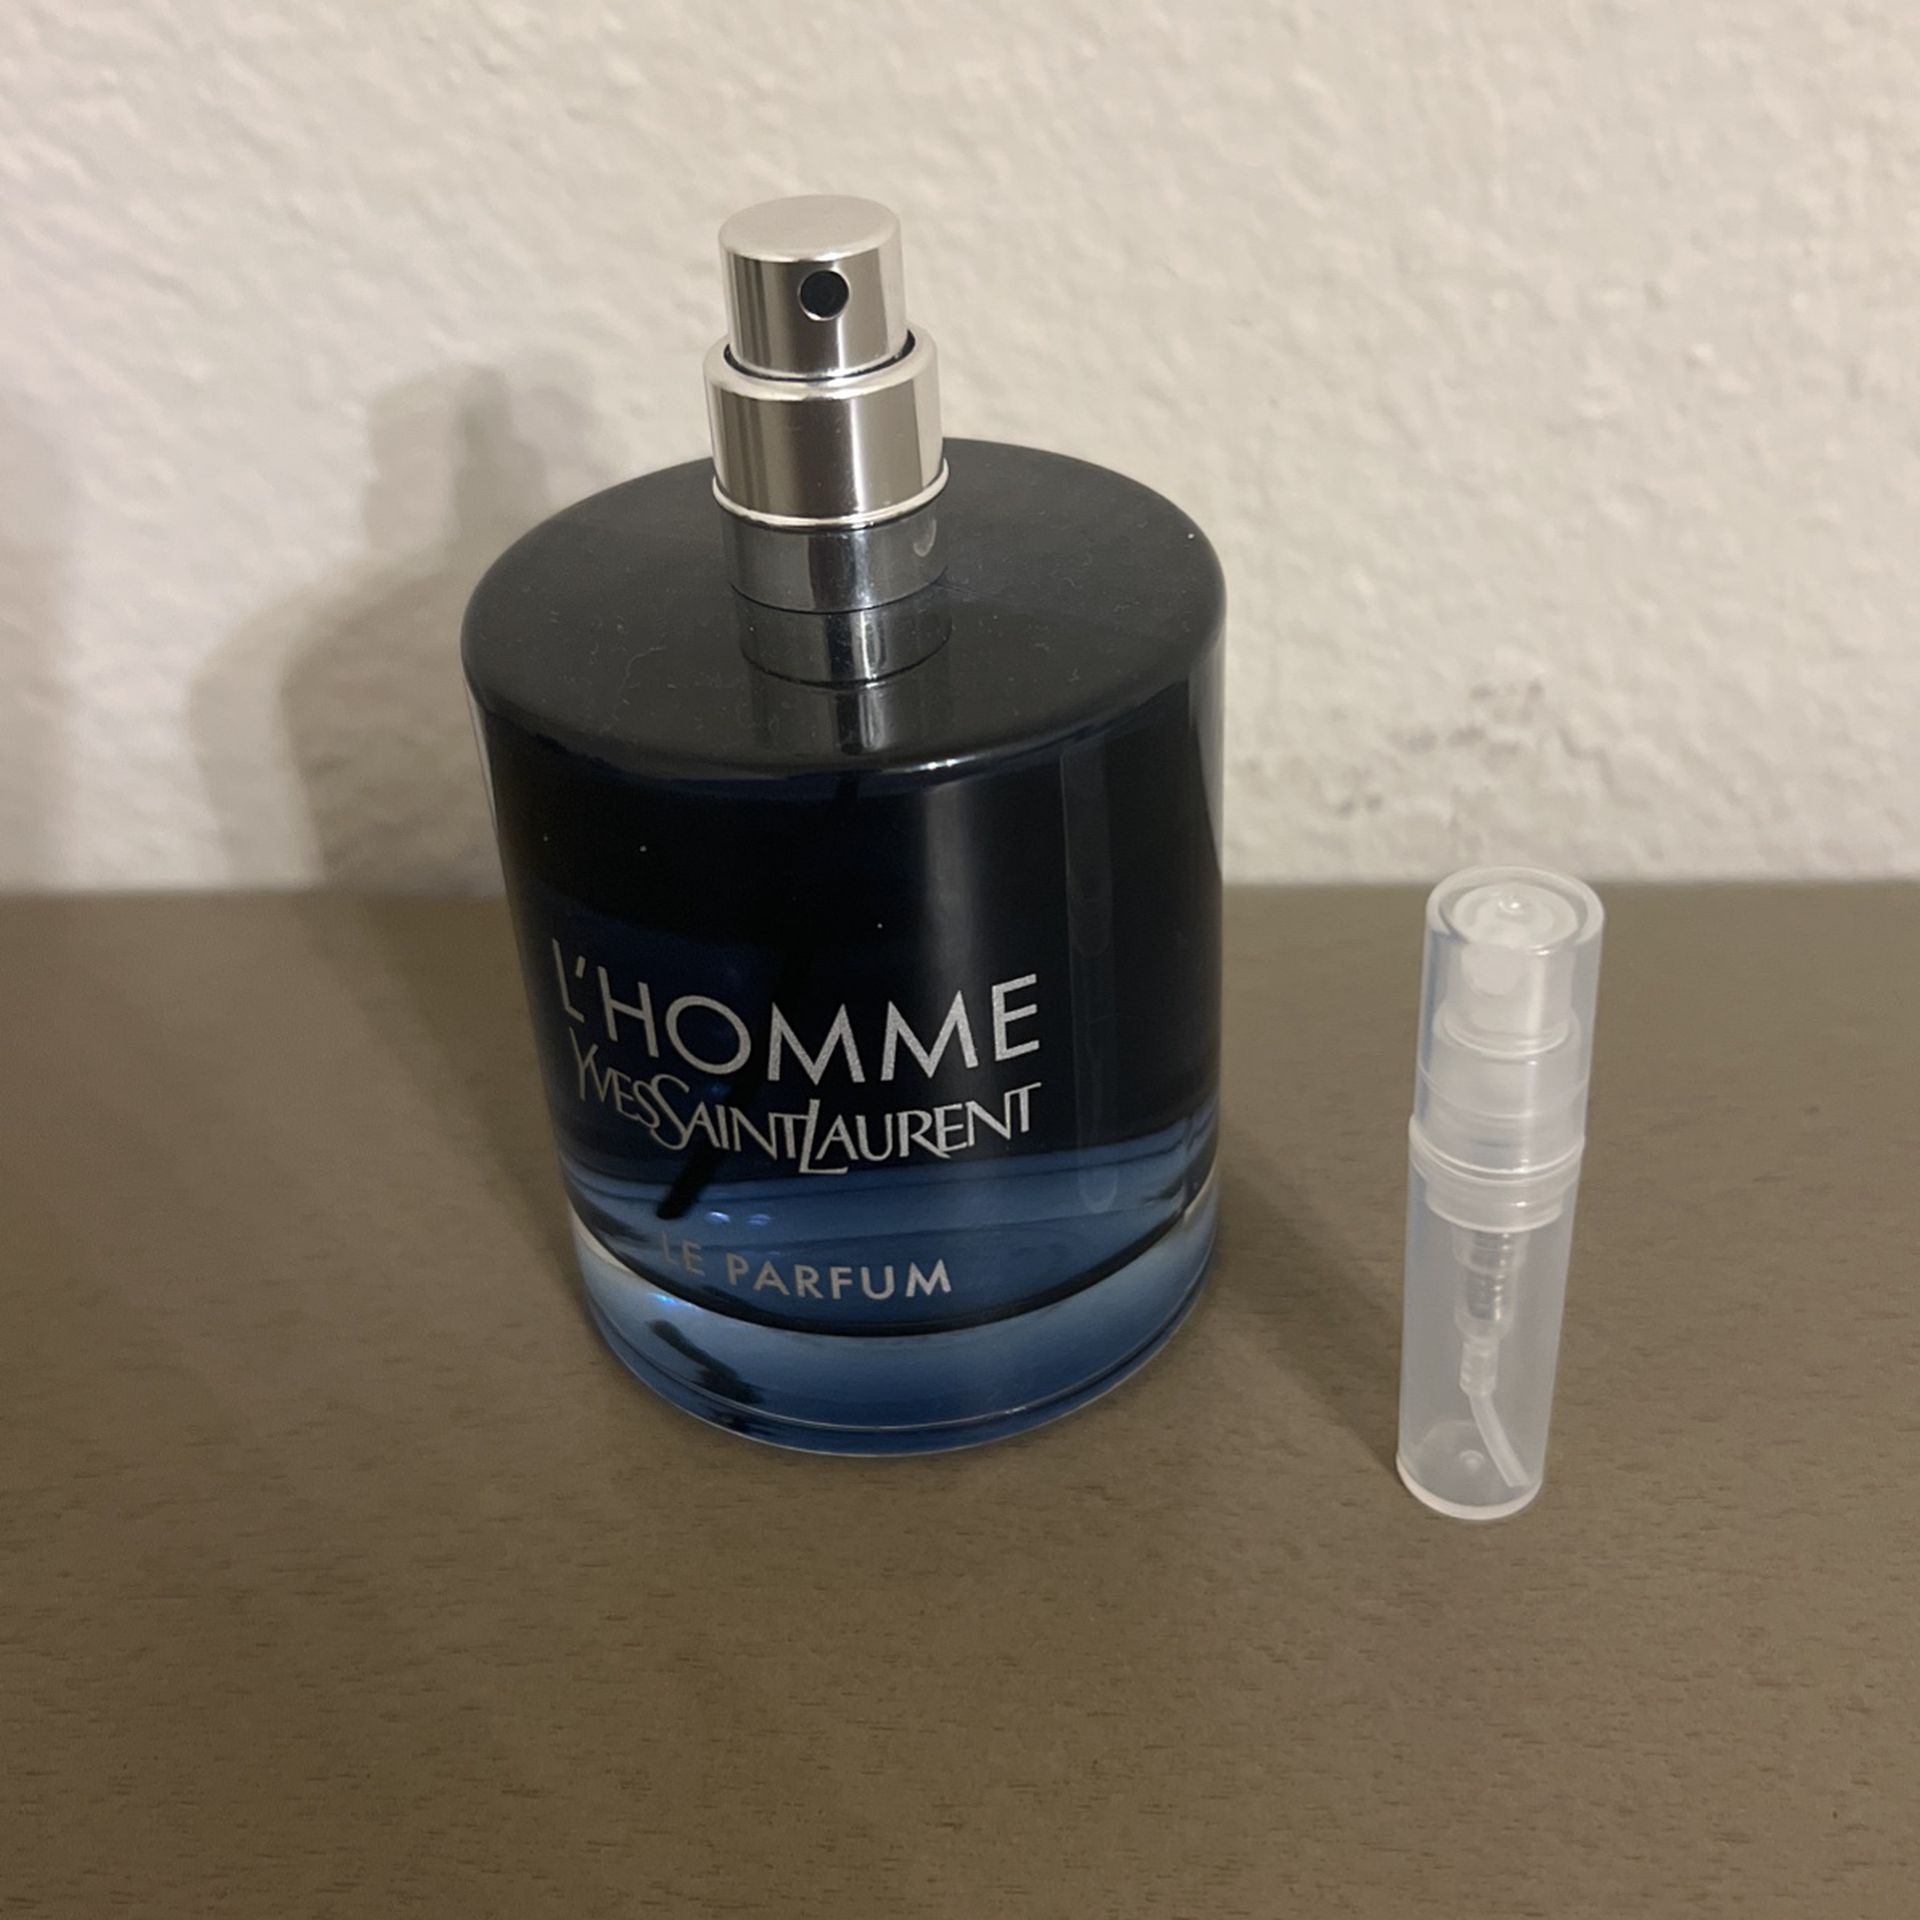 2ml Decant Of Yves Saint Laurent L’homme Le Parfum